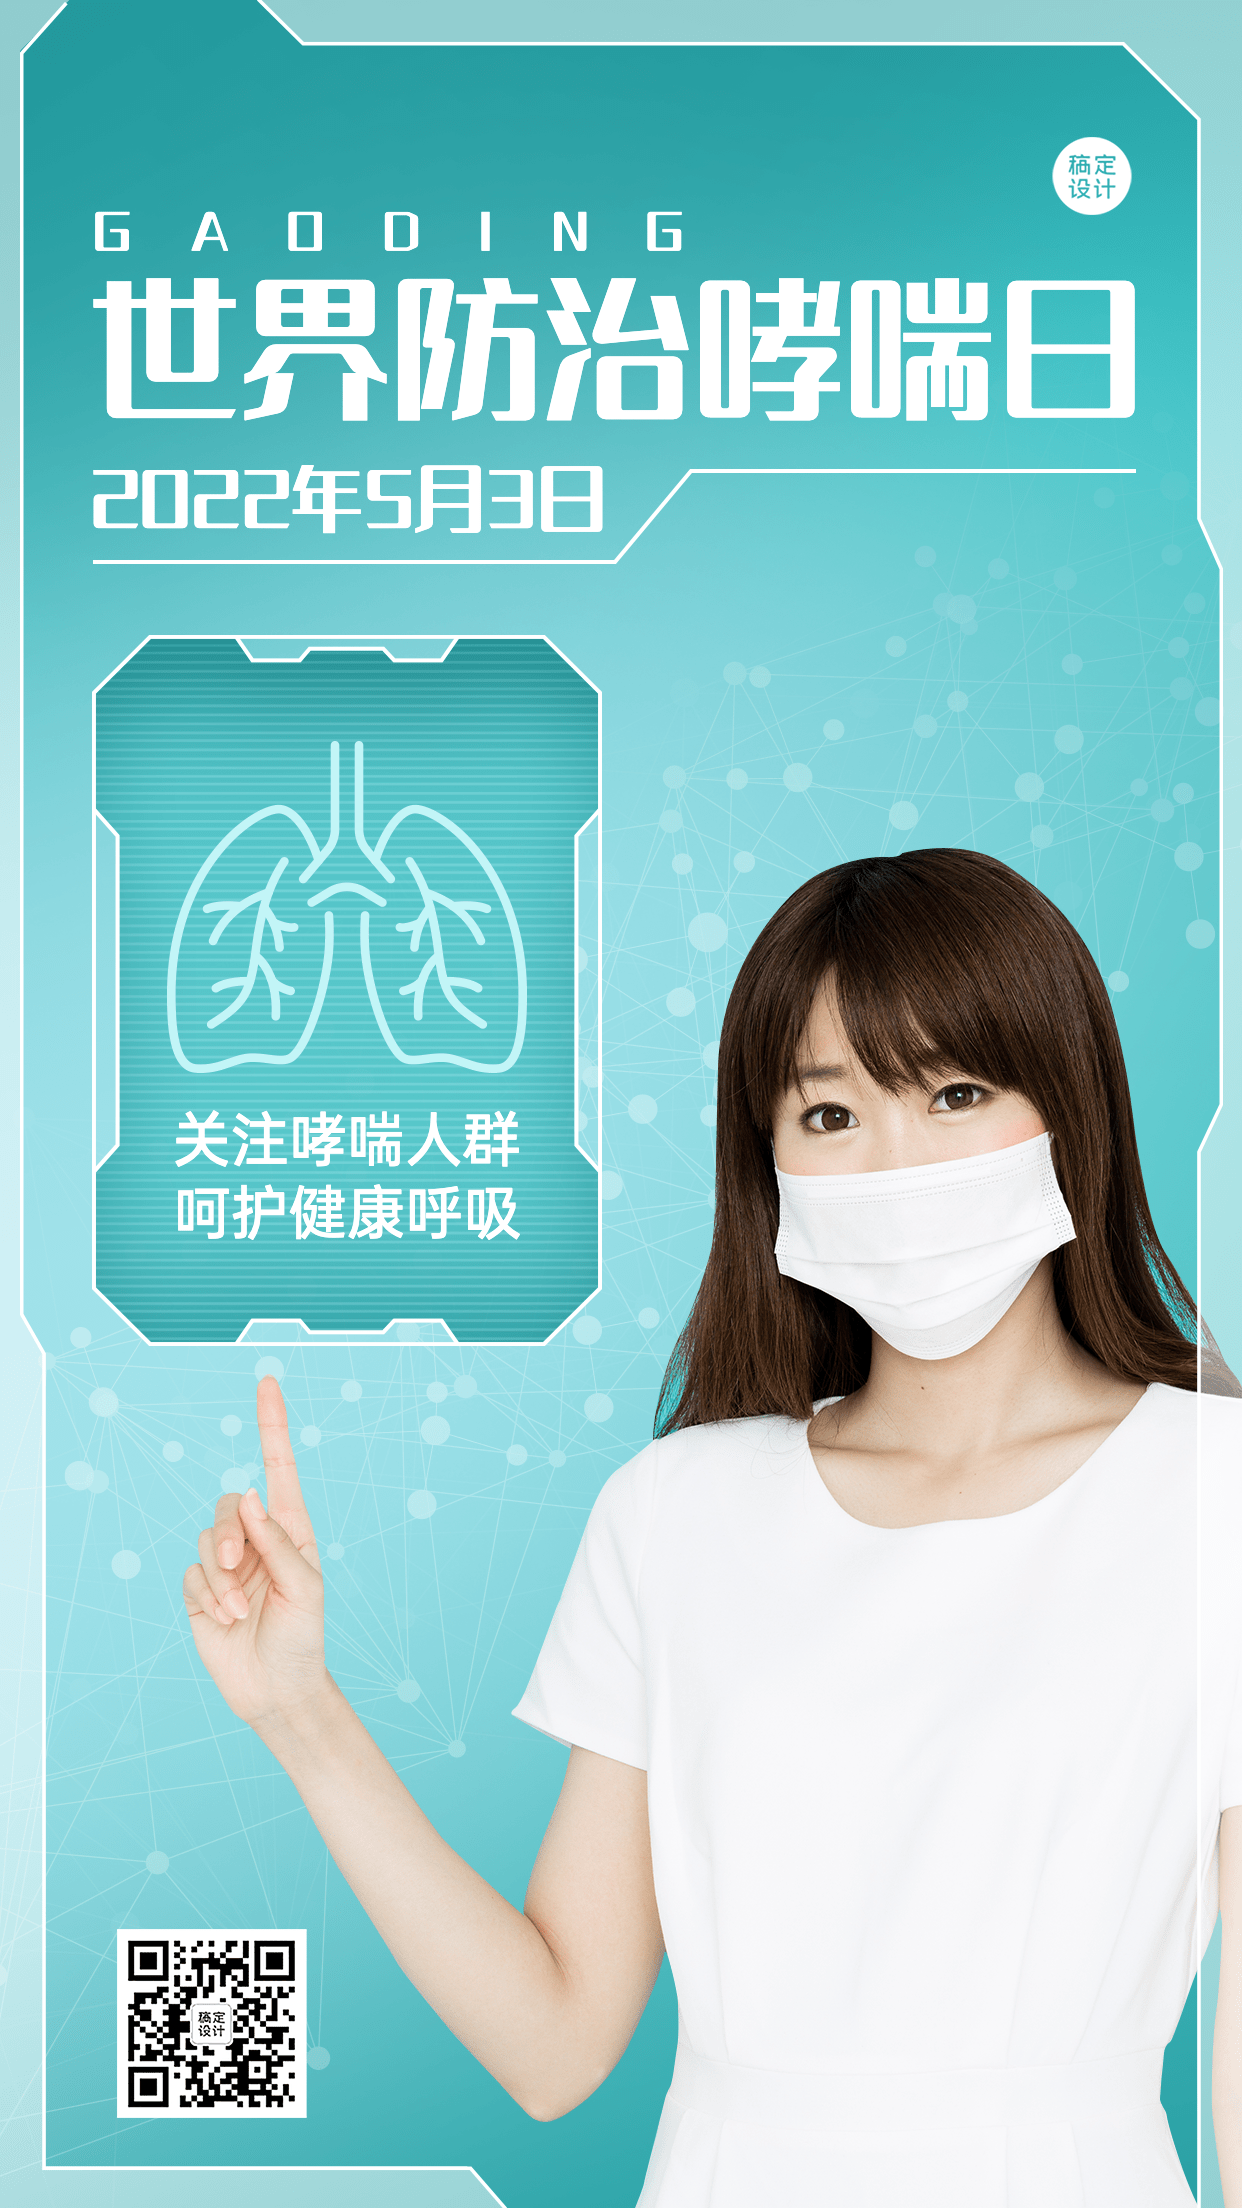 世界防治哮喘日节日宣传手机海报